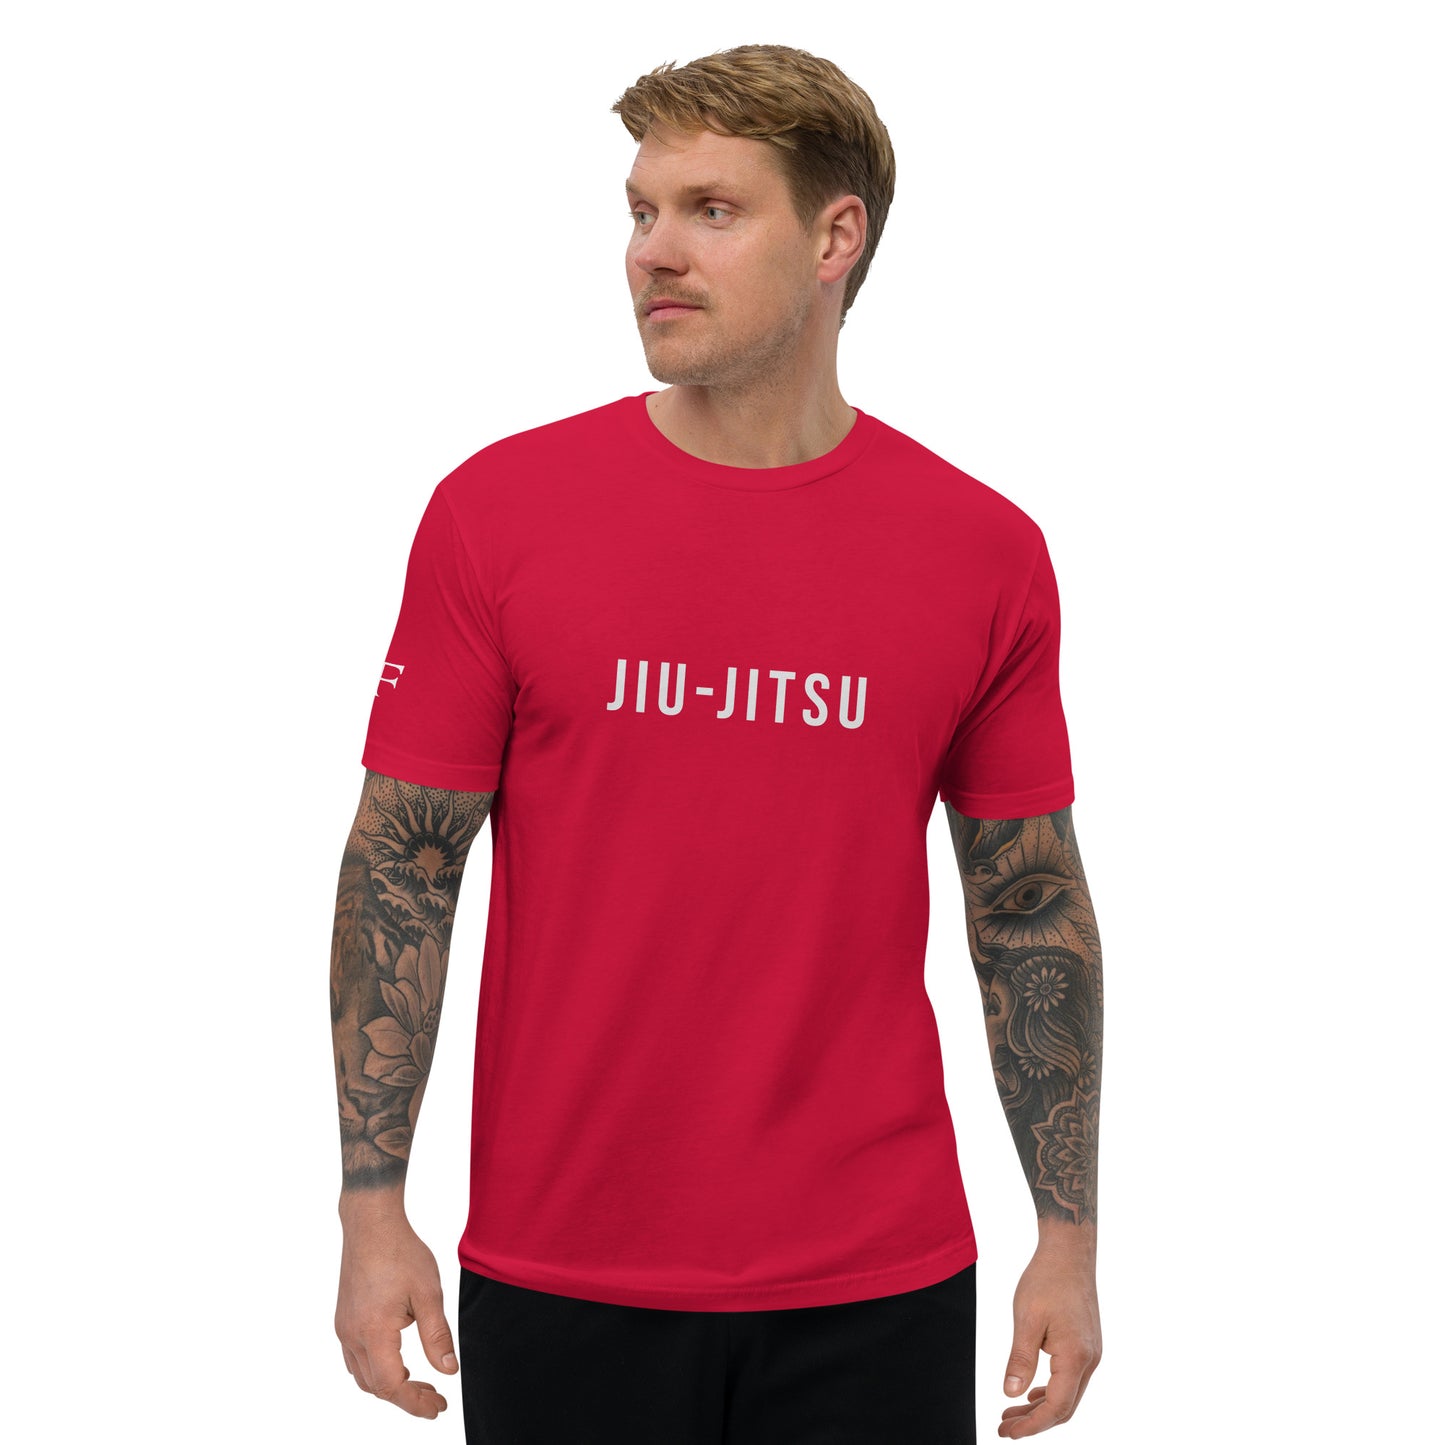 Jiu-Jitsu Men's Fitted Muscle T-Shirt